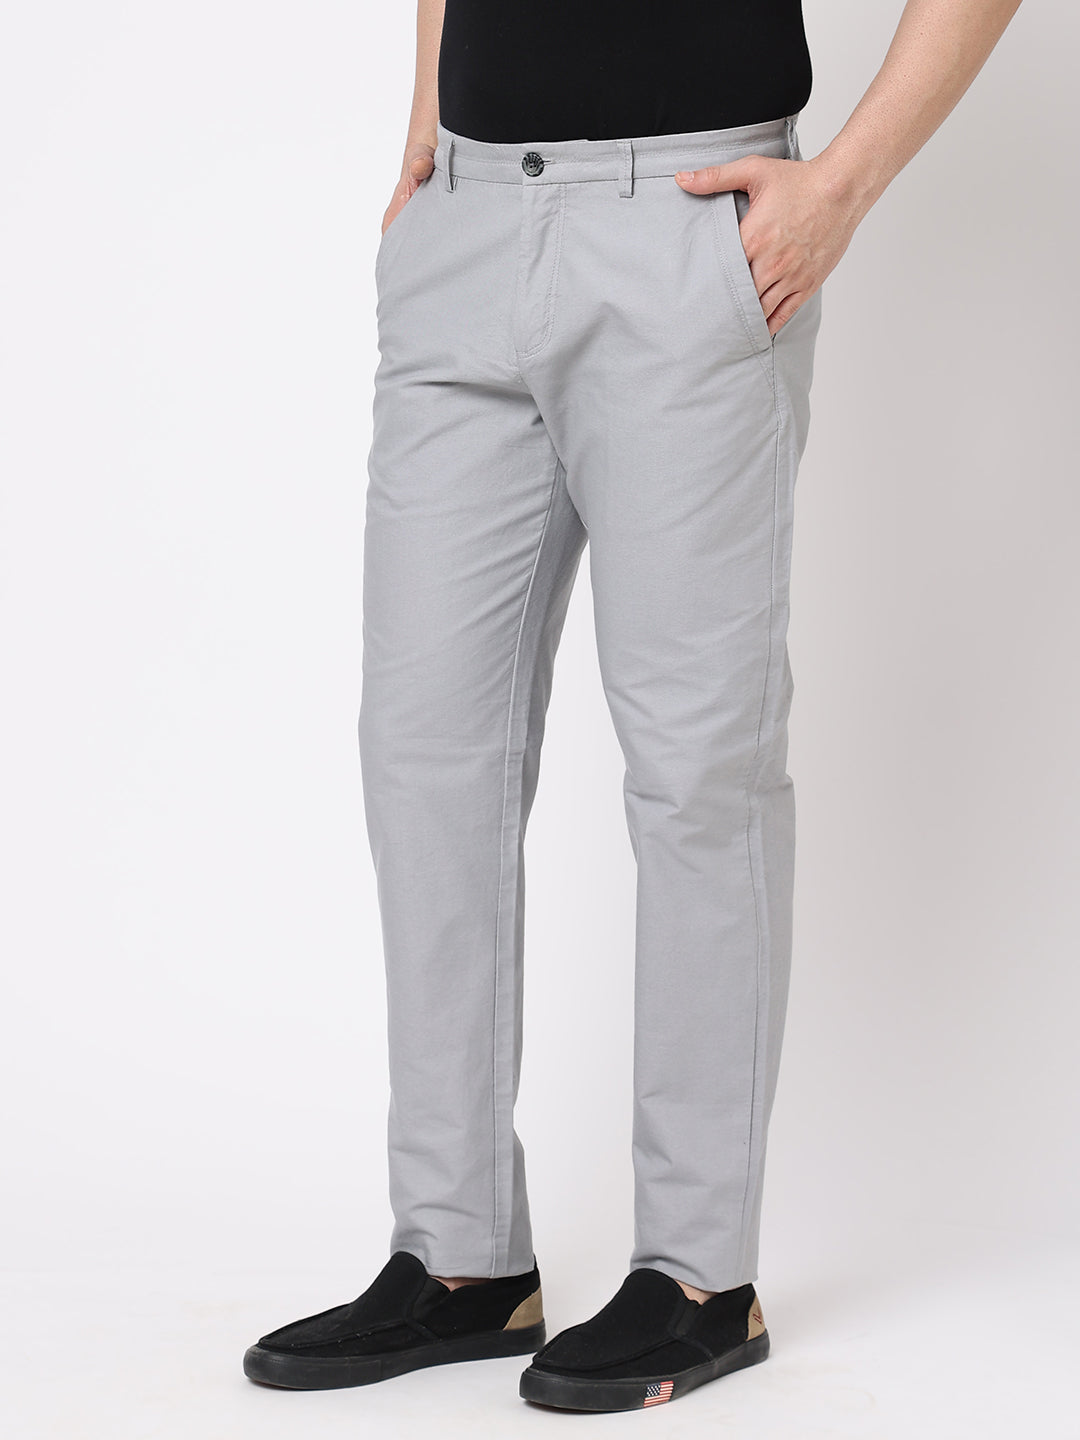 Men's Grey 100% Cotton Slim Fit Pant